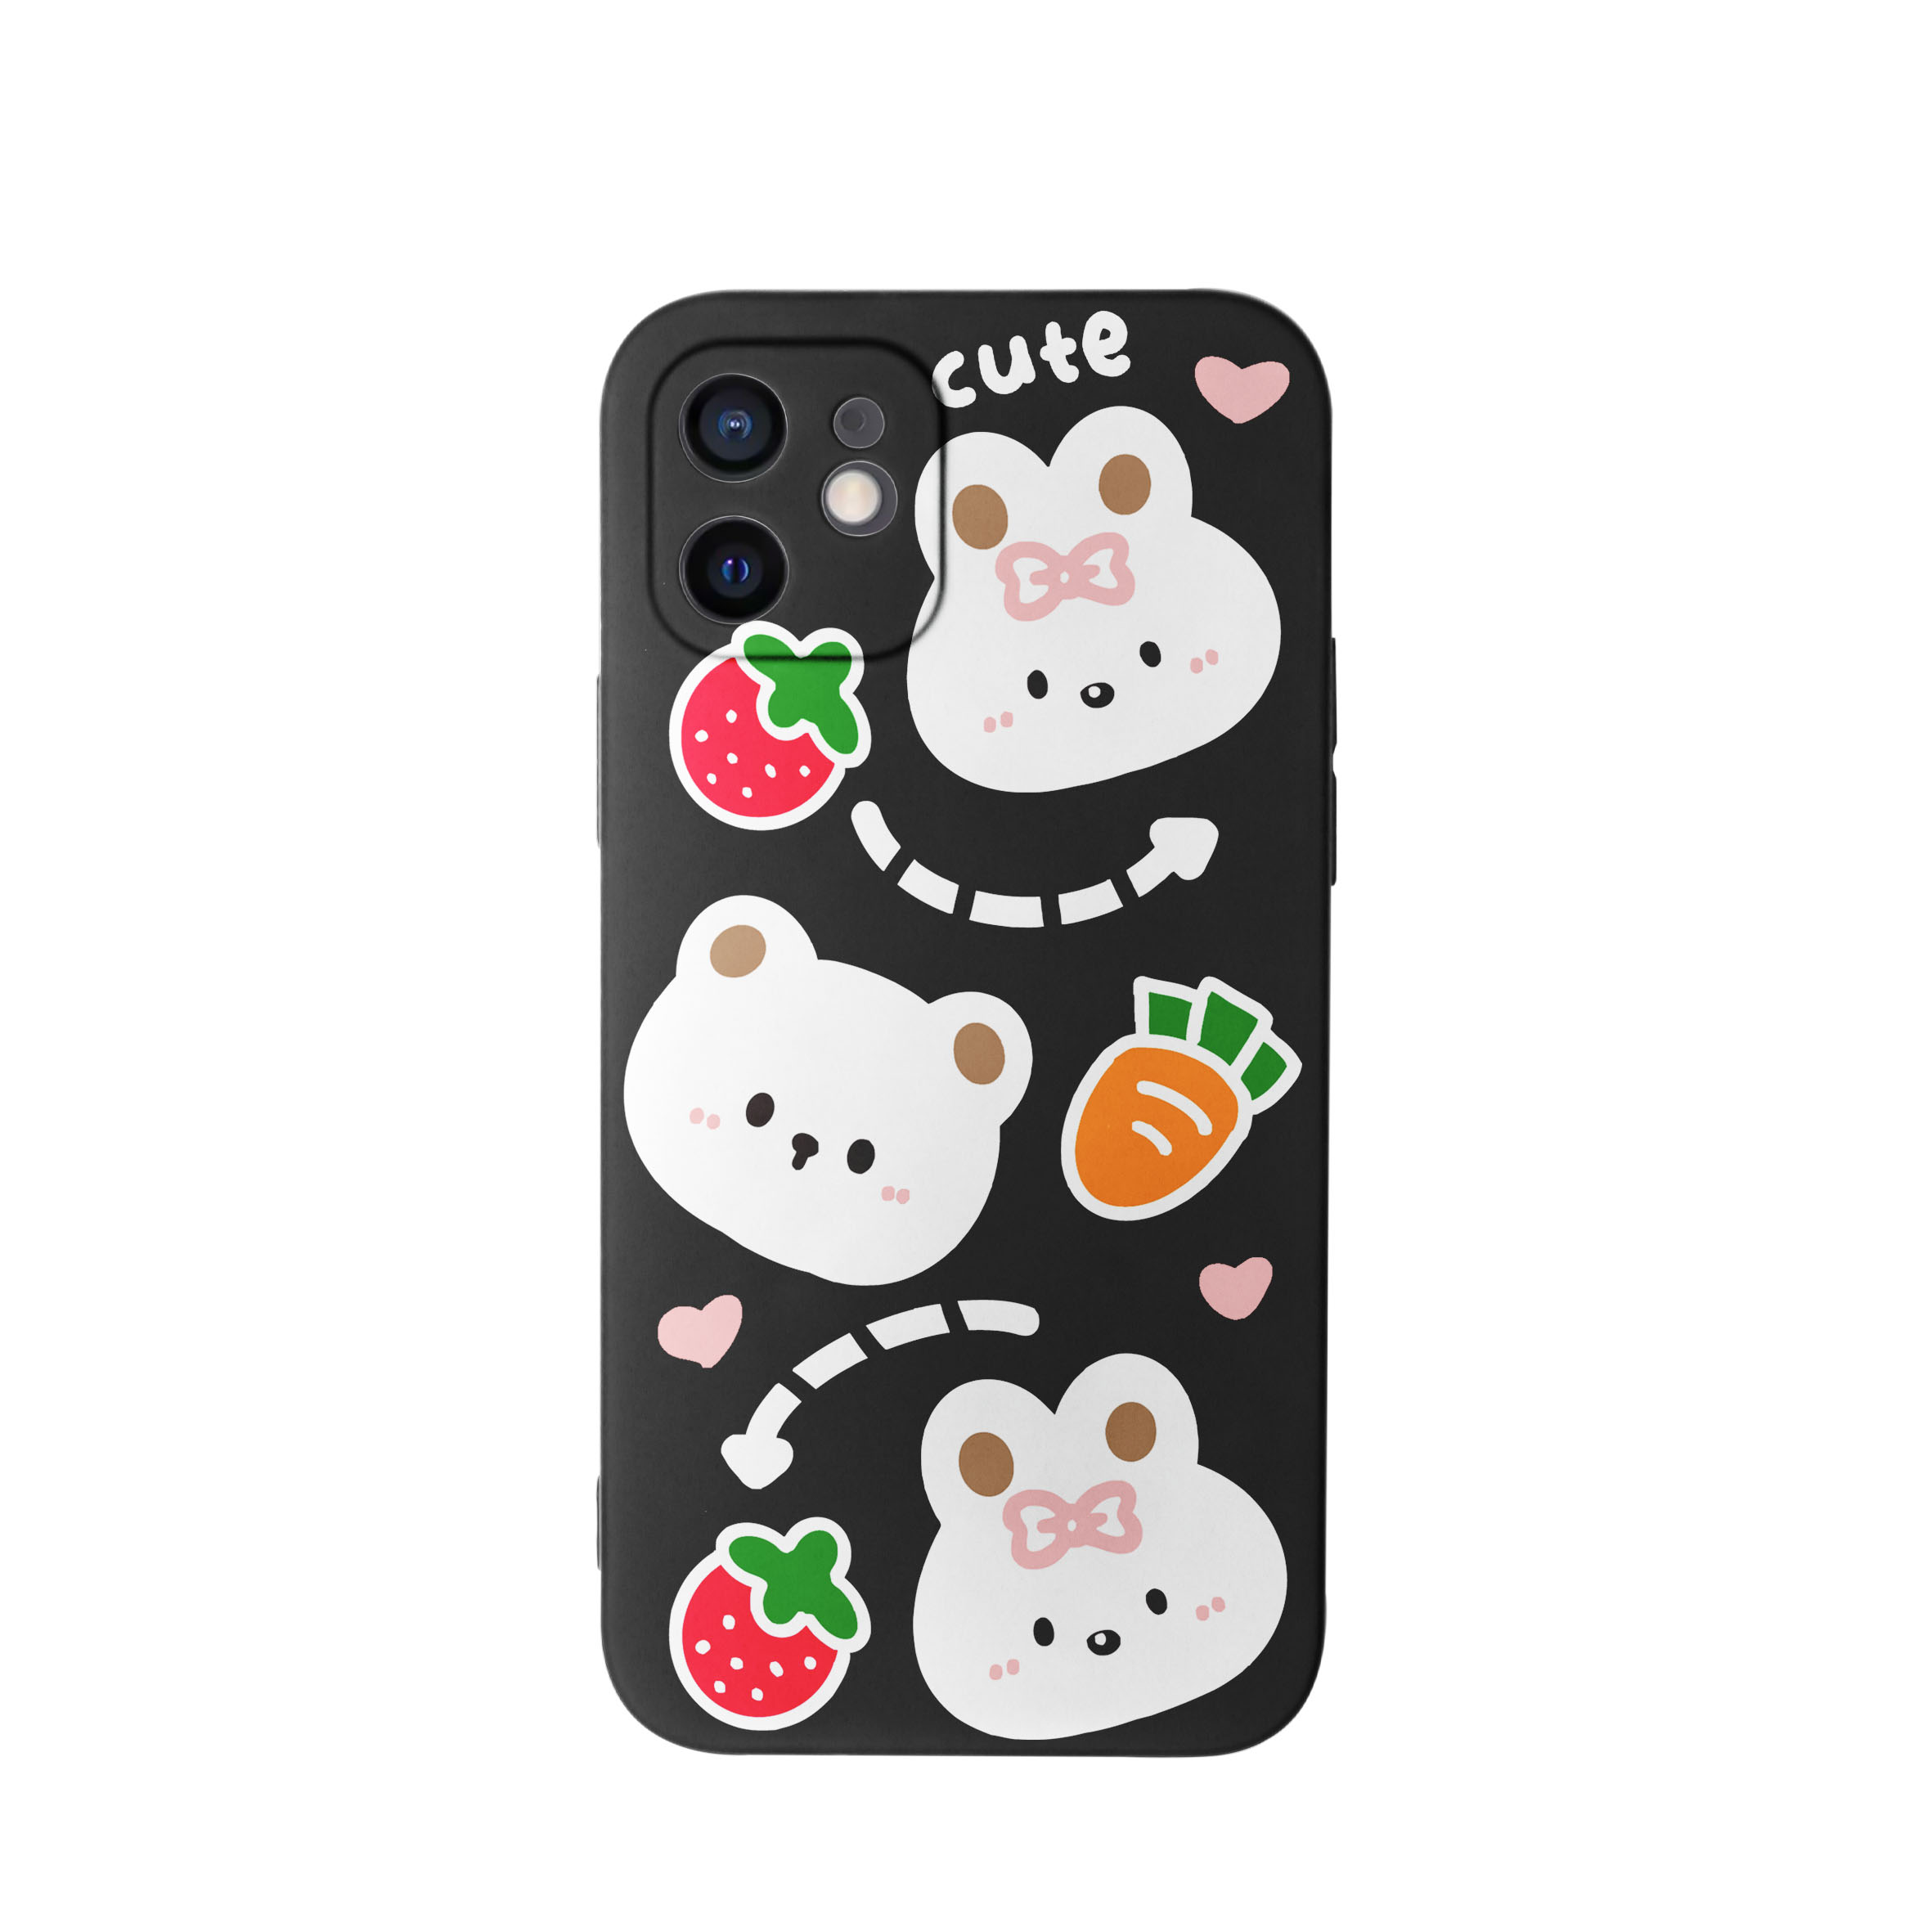 کاور طرح خرس و خرگوش دخترانه کد f4014 مناسب برای گوشی موبایل اپل iphone 11